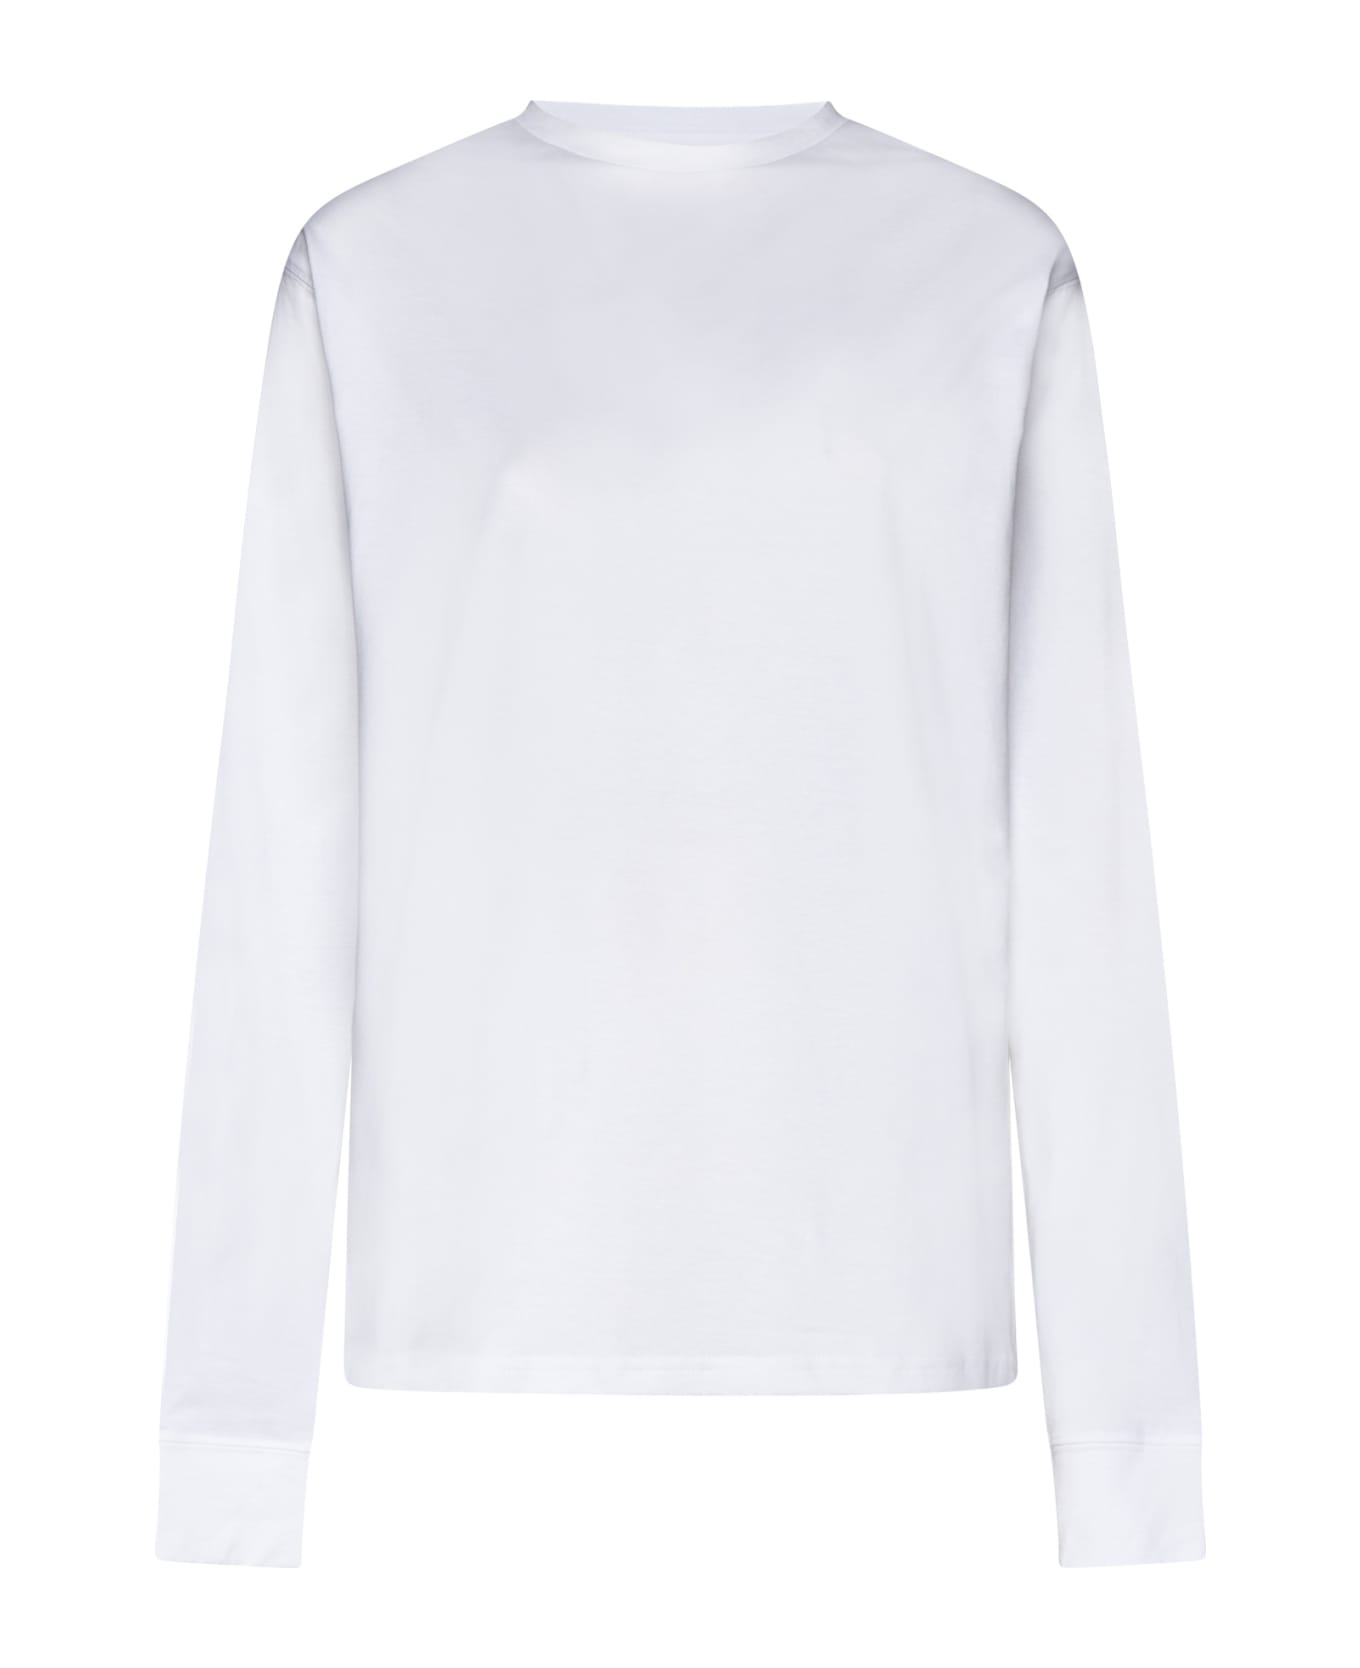 Studio Nicholson T-Shirt - Optic white Tシャツ